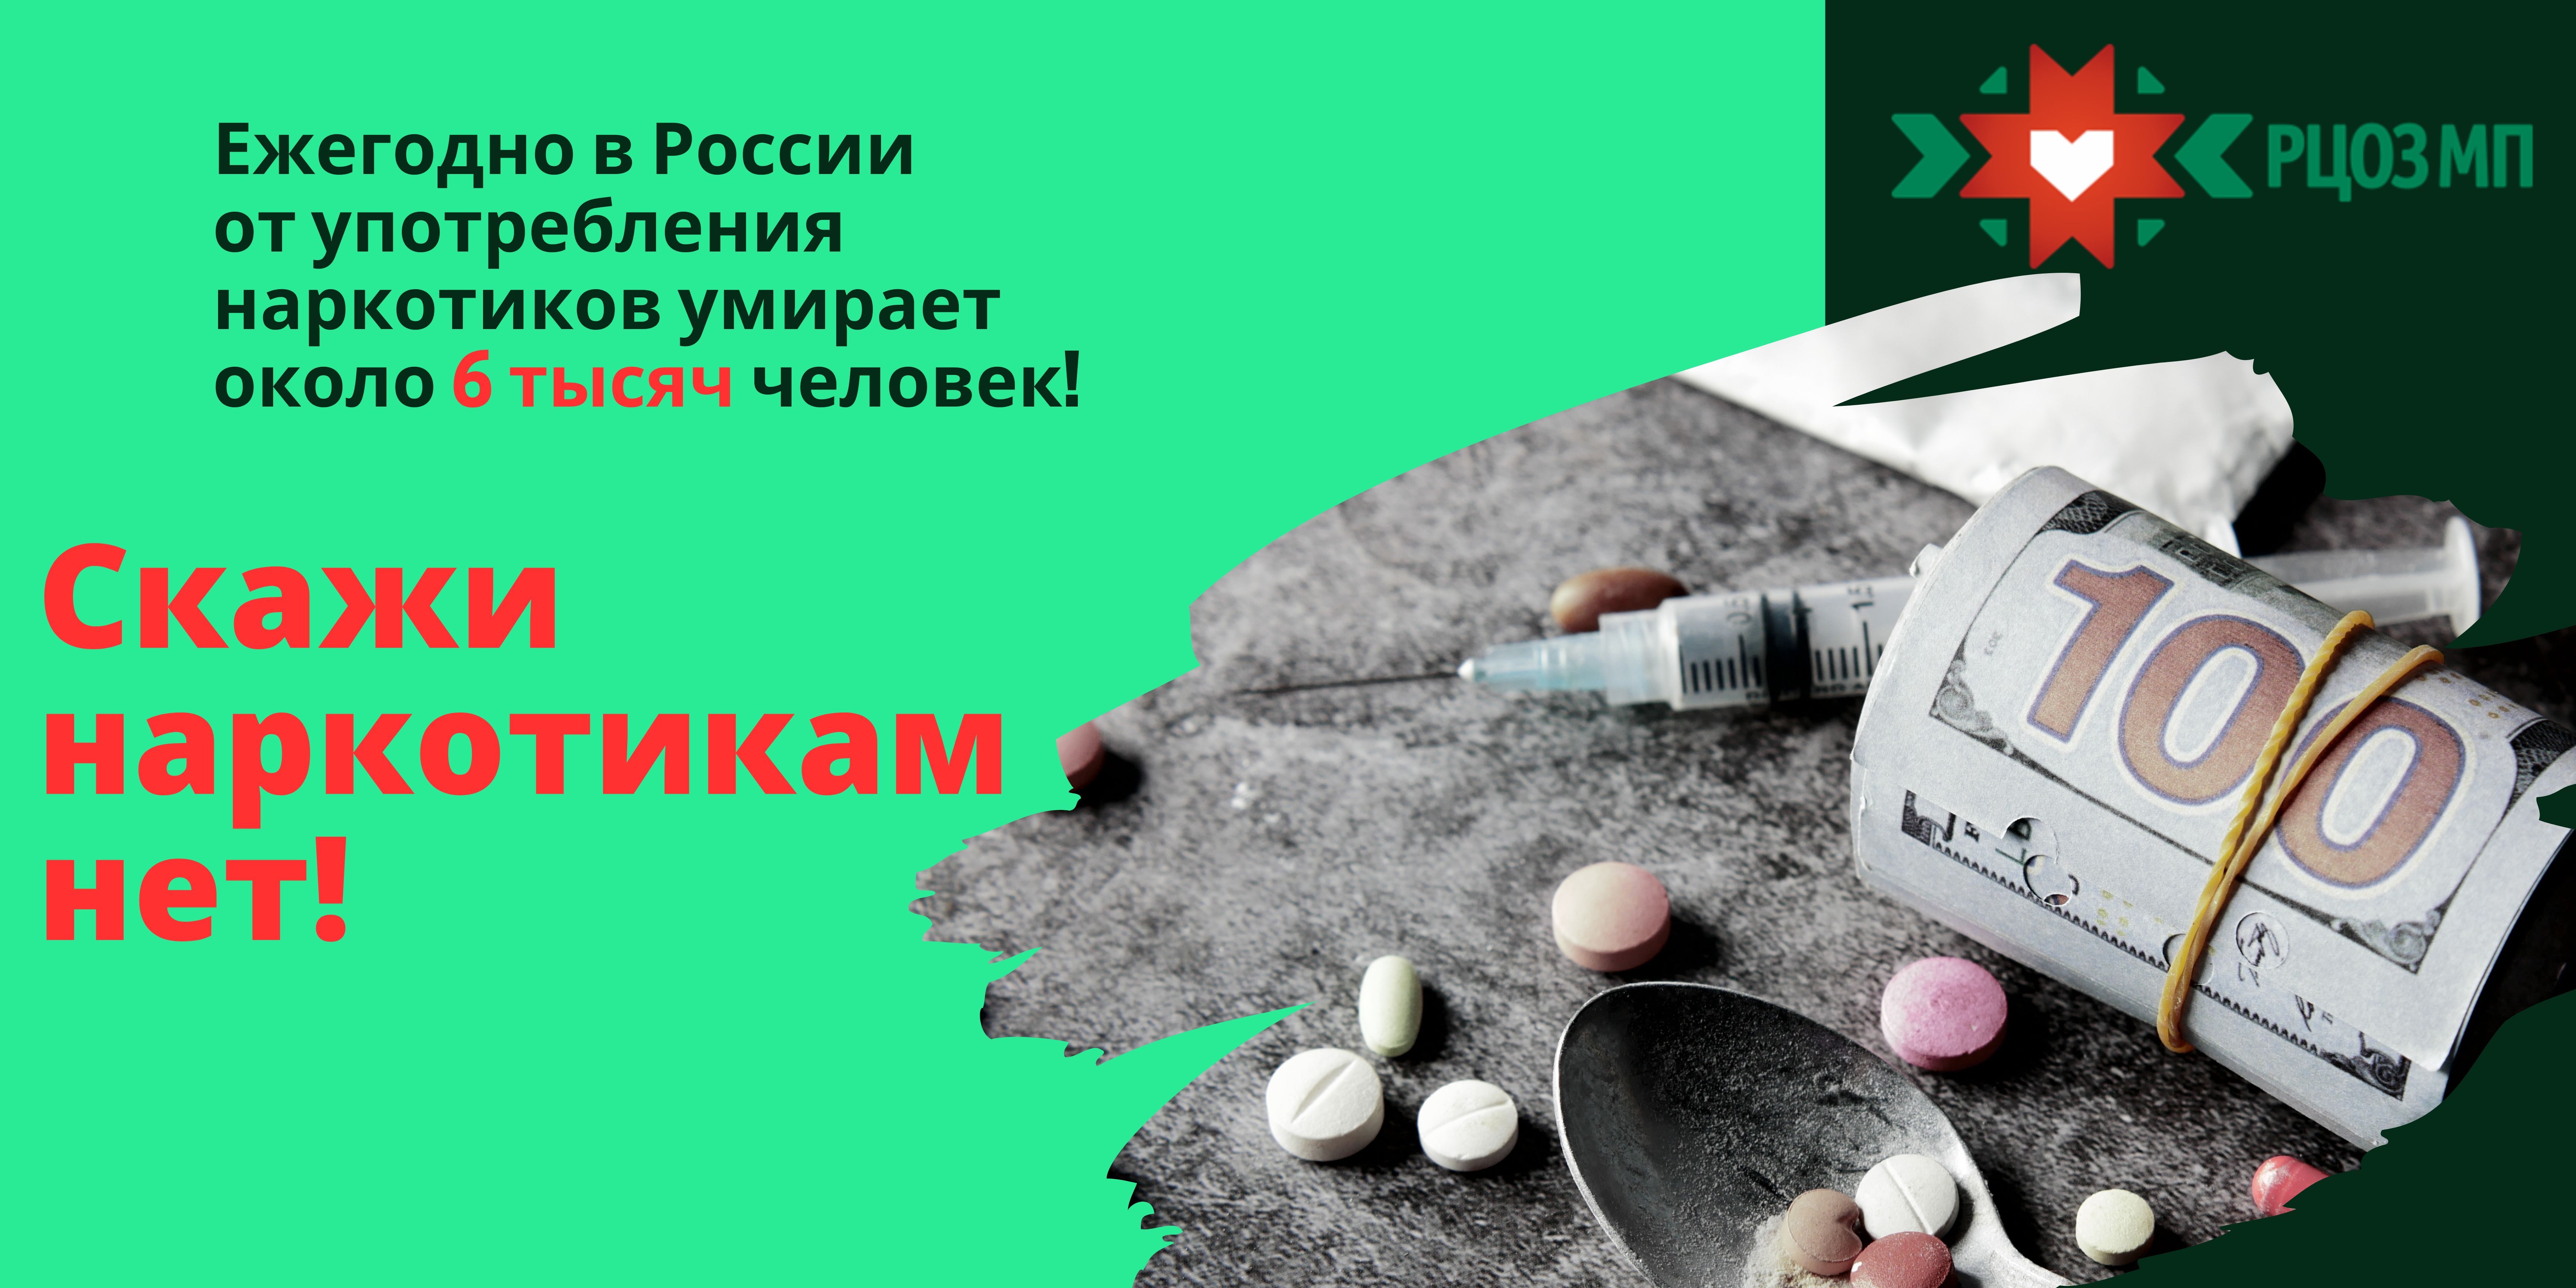 Всероссийский месячник антинаркотической направленности и популяризации здорового образа жизни.